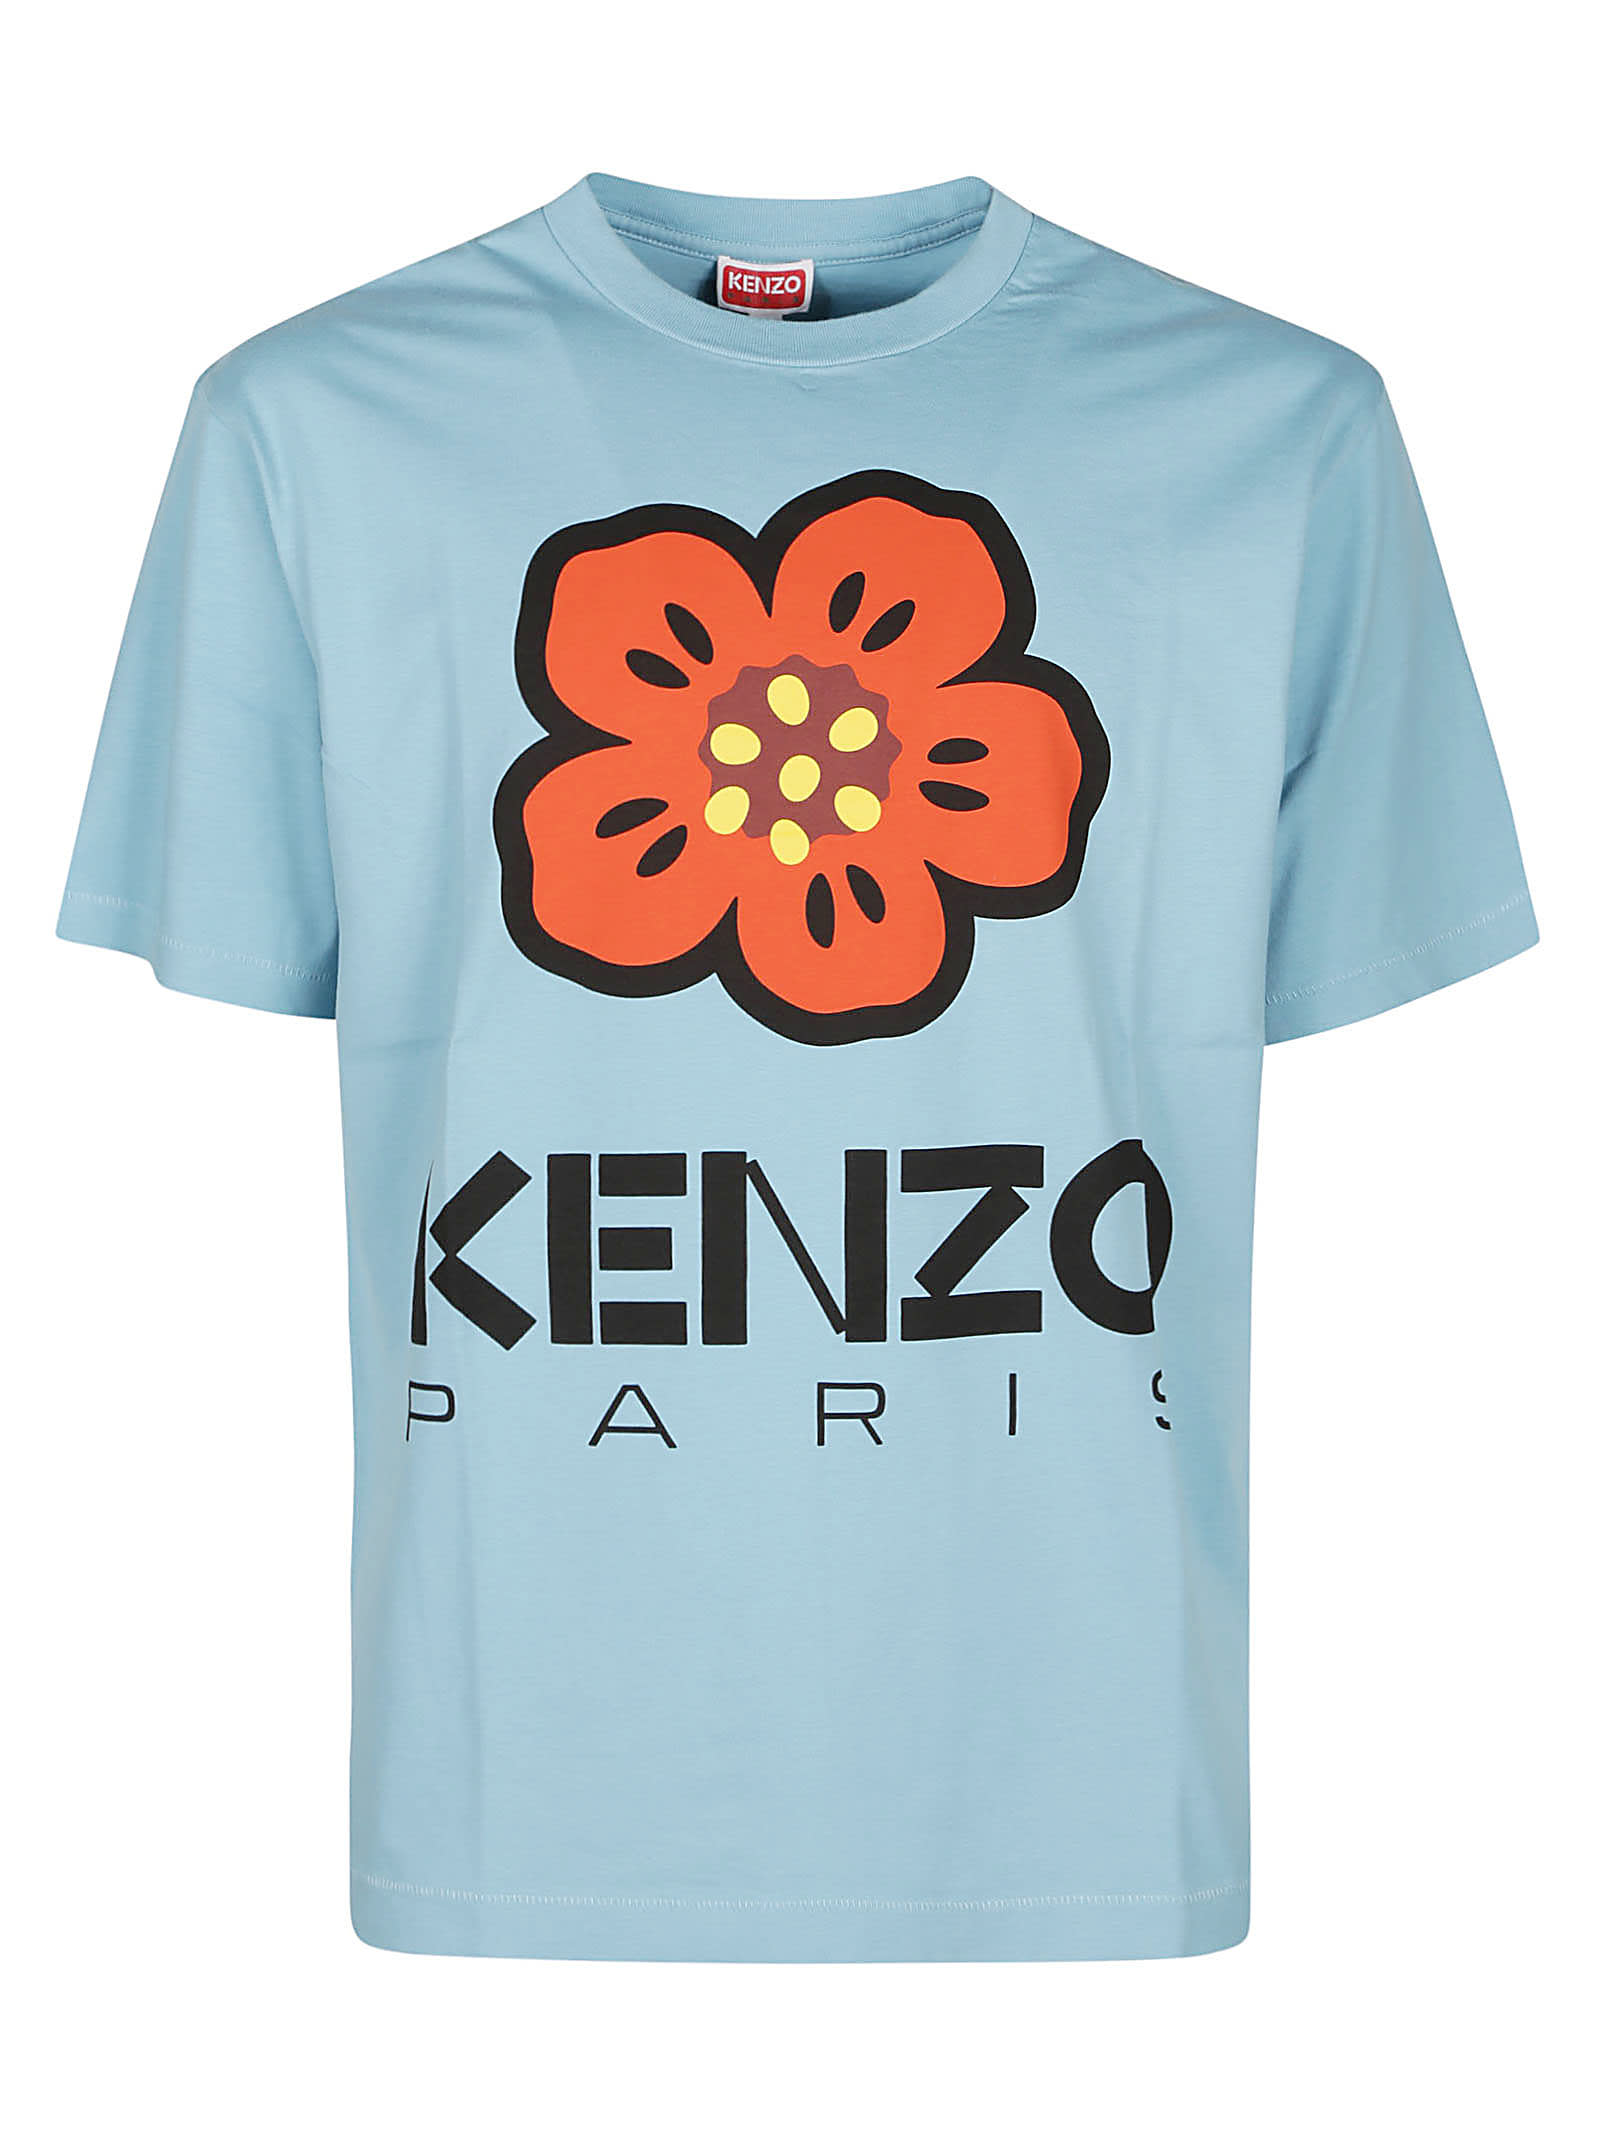 Kenzo Paris x Nigo Boke Flower White L/S T Shirt Mens Small